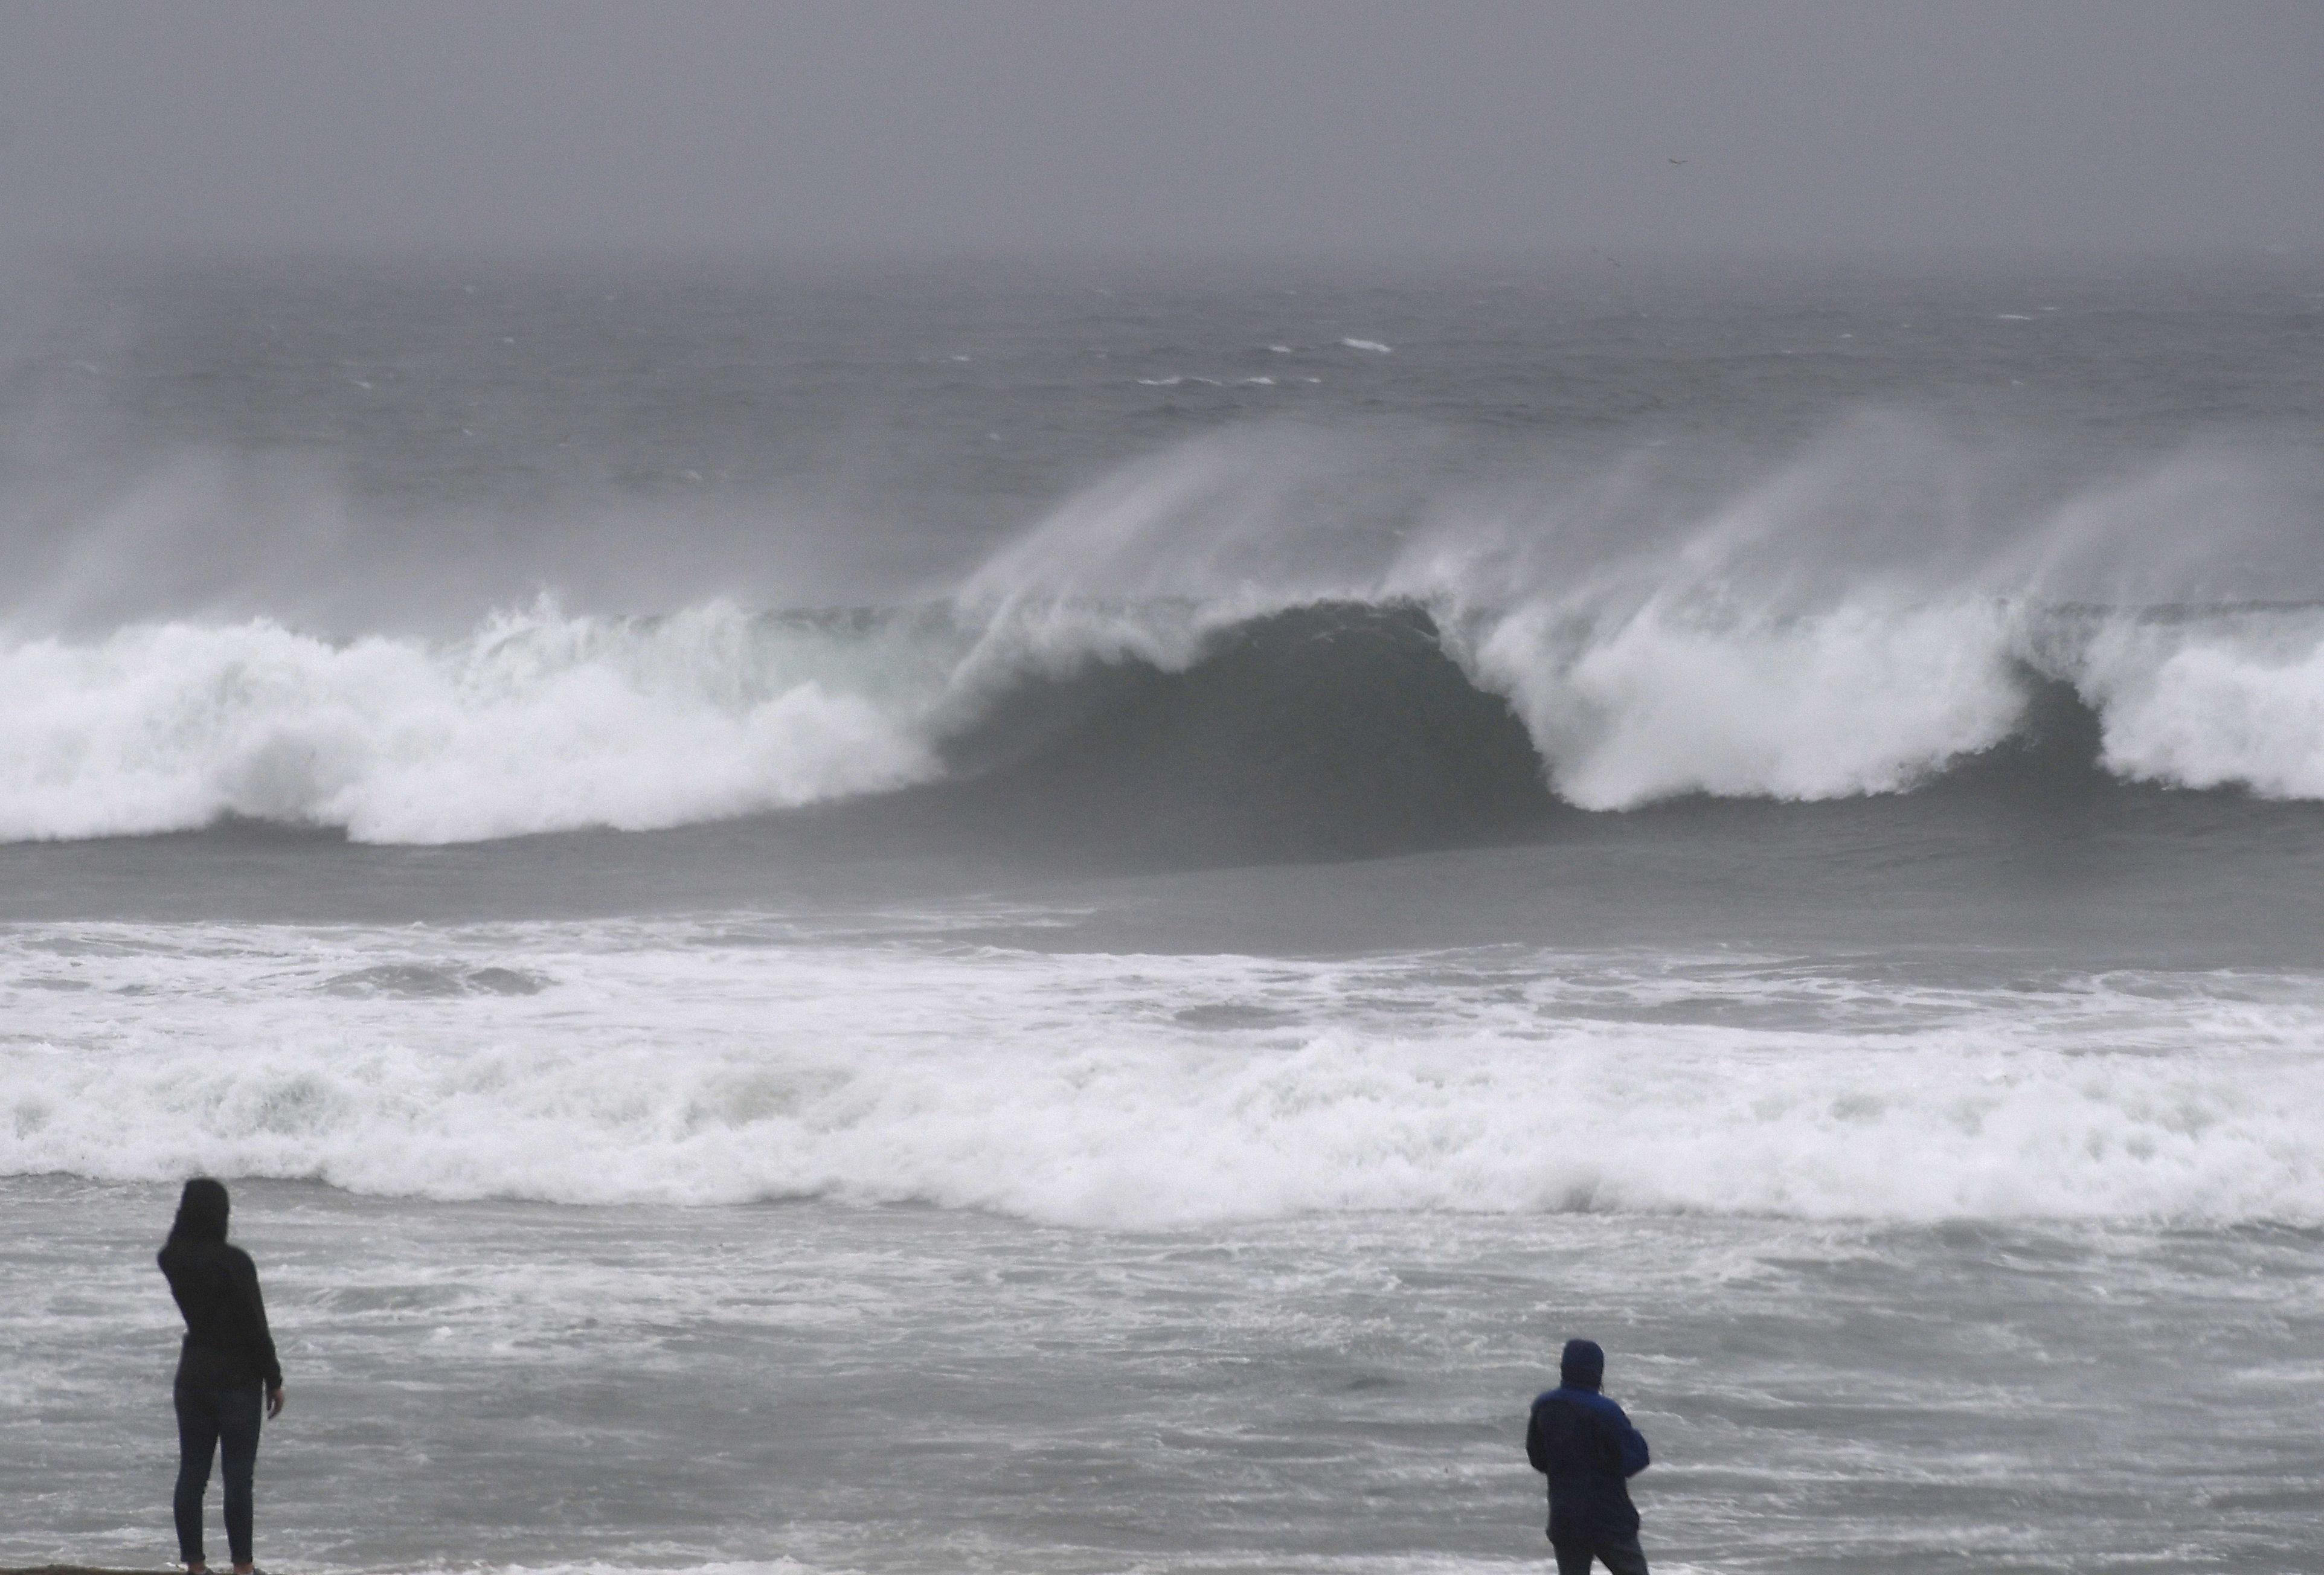 مواطنون أمريكيون يشاهدون الأمواج العالية على الشاطئ نتيجة العواصف